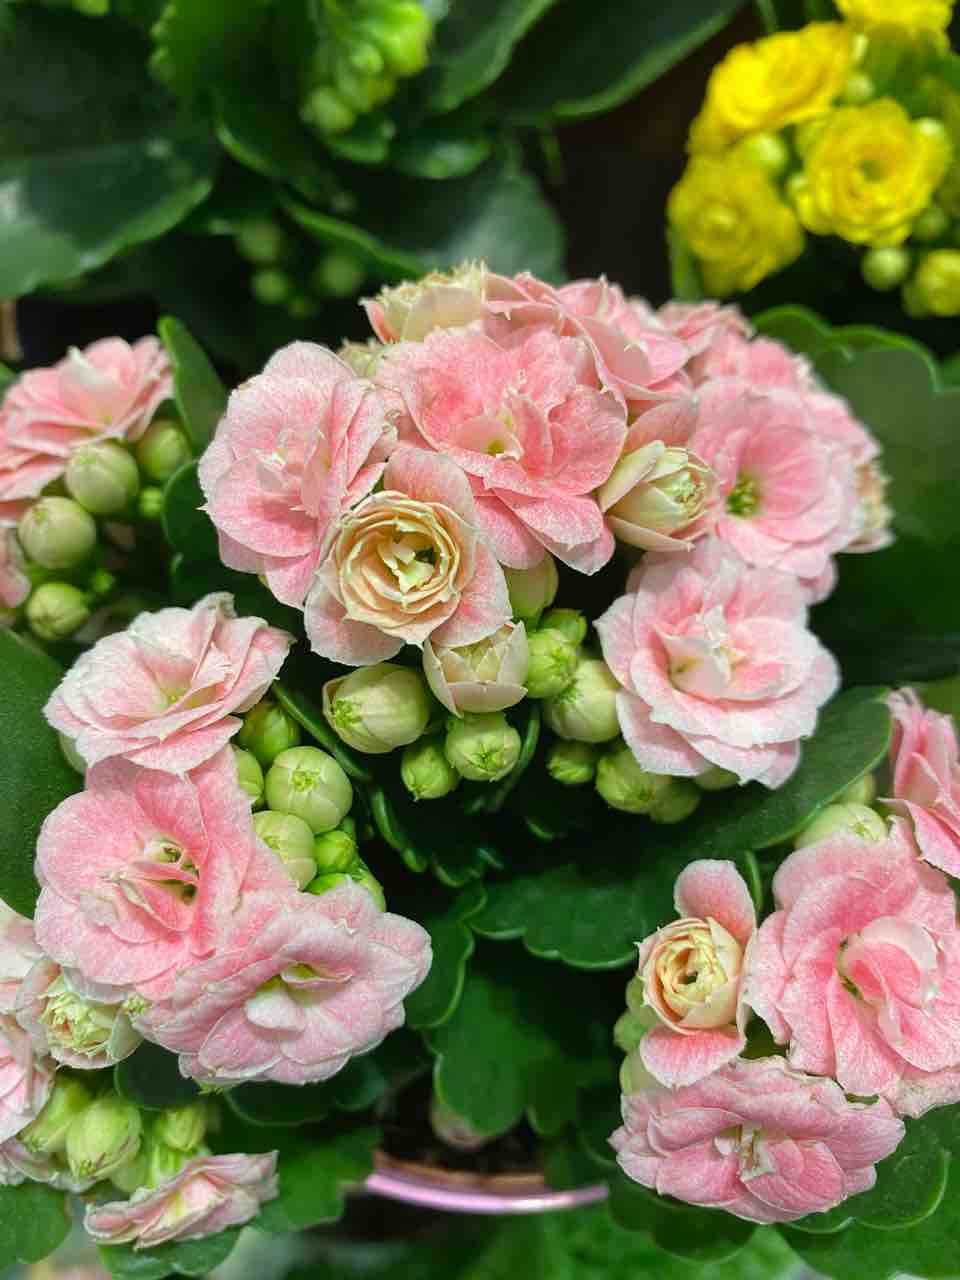 カランコエ ピンク おはようございます 素敵なピンク色 写真 花 花言葉 Rose悠雅